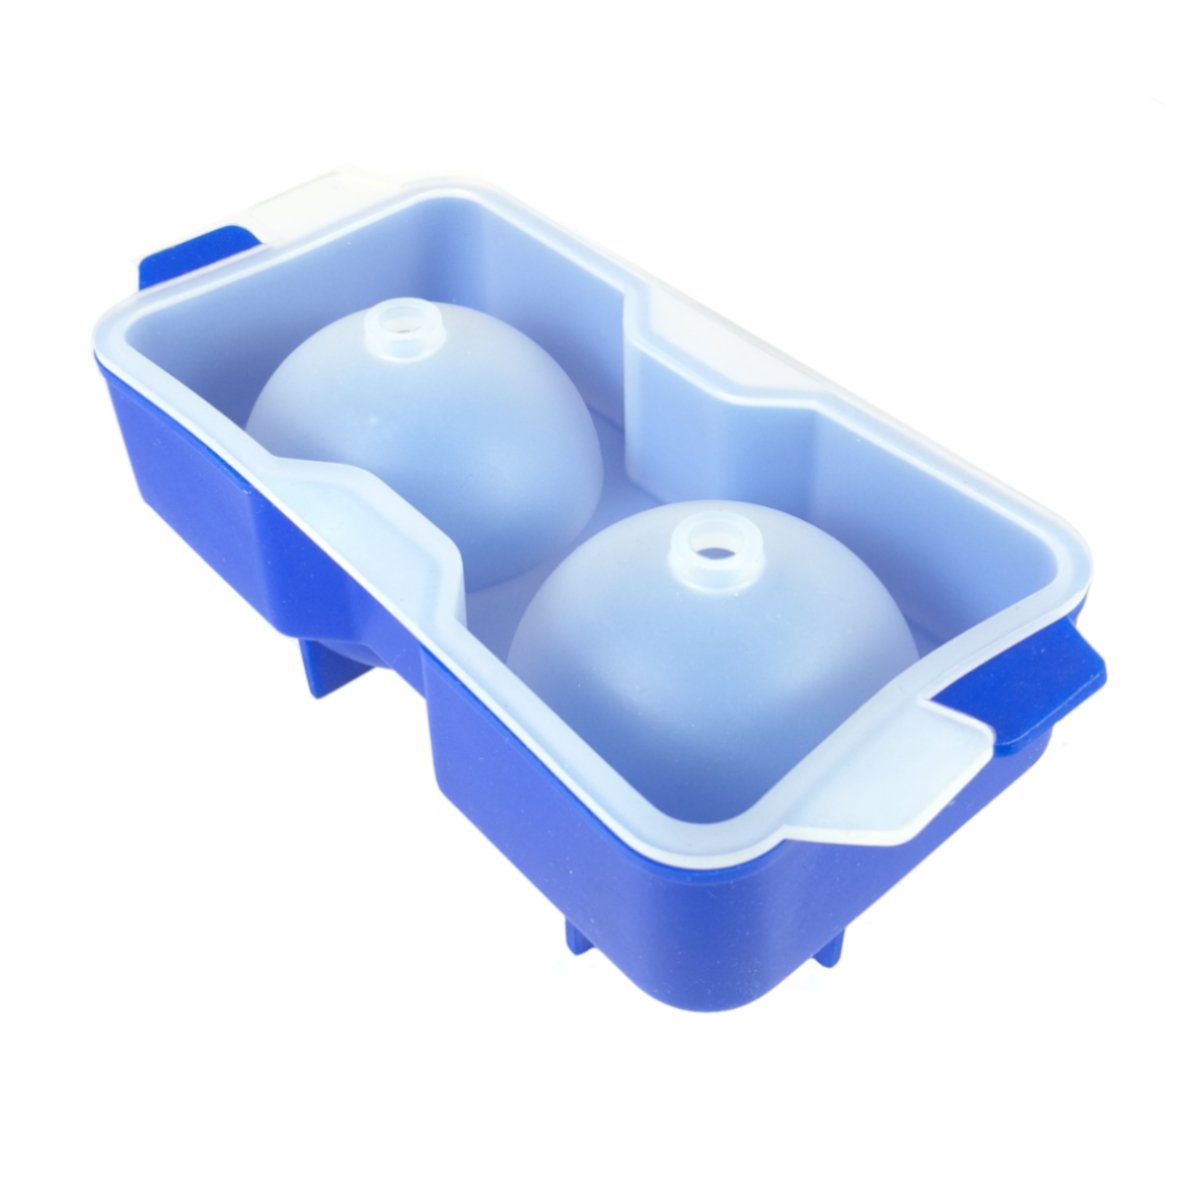 Forma Bola de Gelo em Silicone com 2 Espaços:Azul